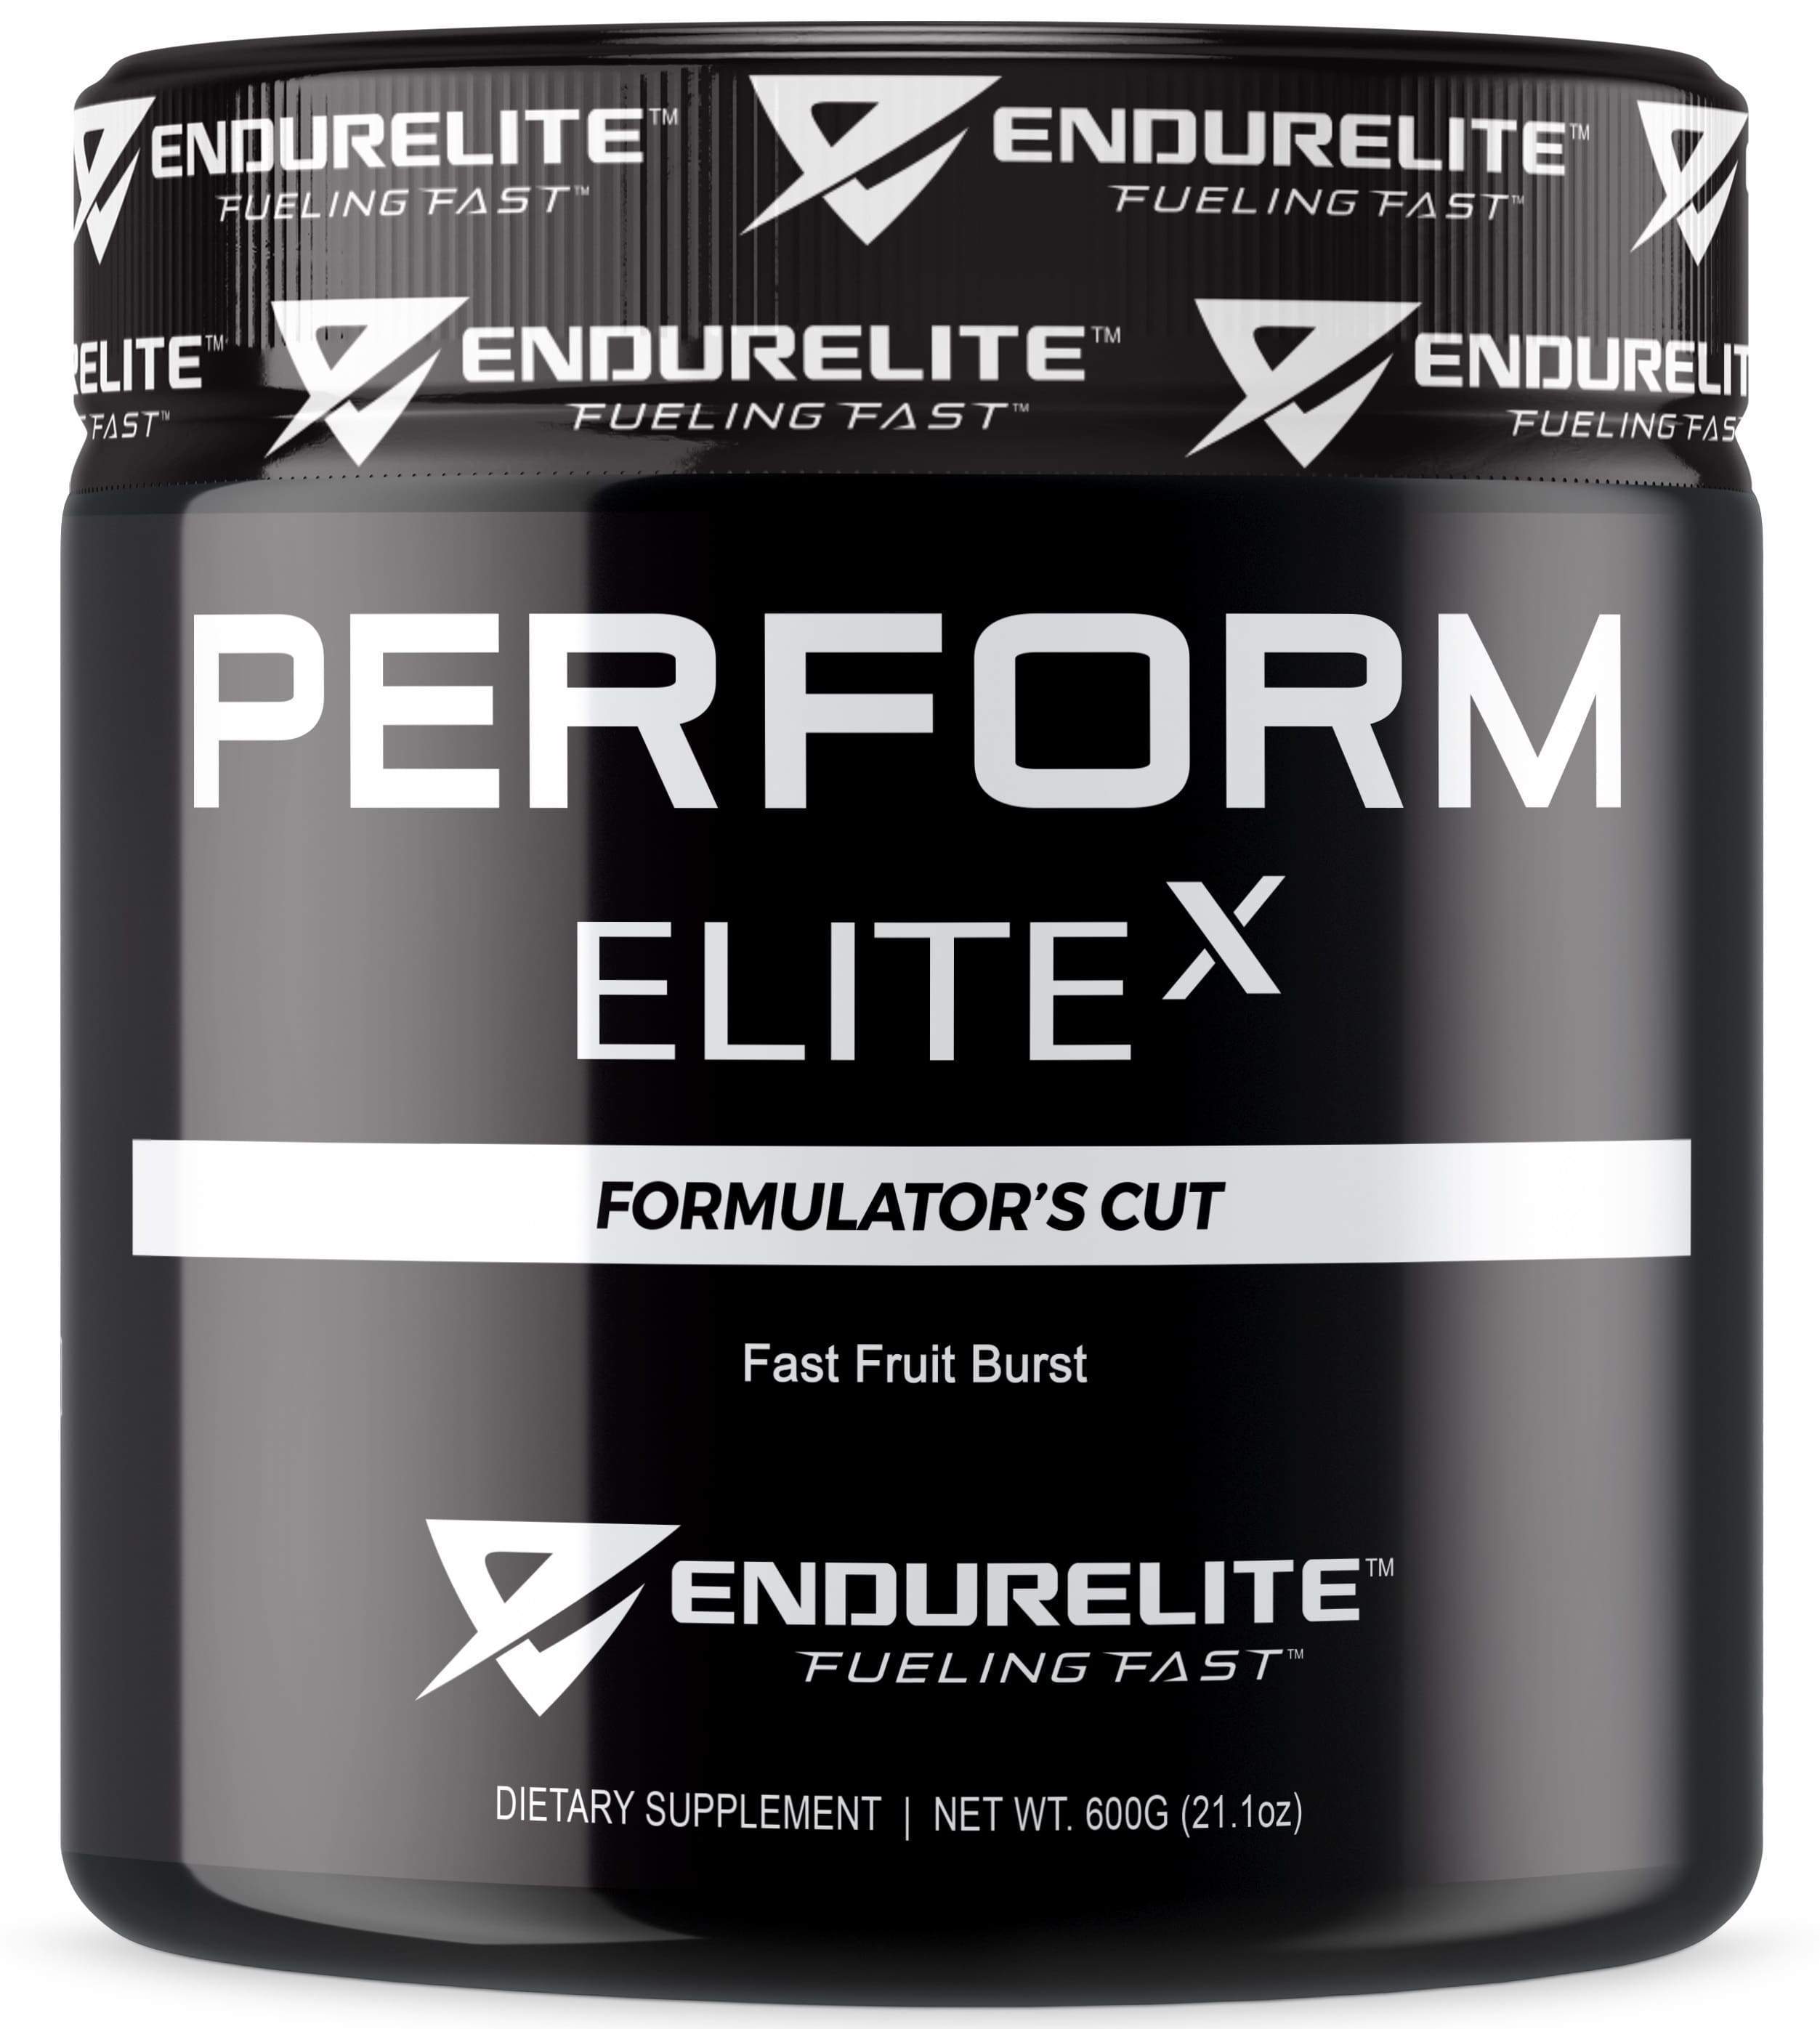 EndurElite PerformElite X: The Formulator's Cut